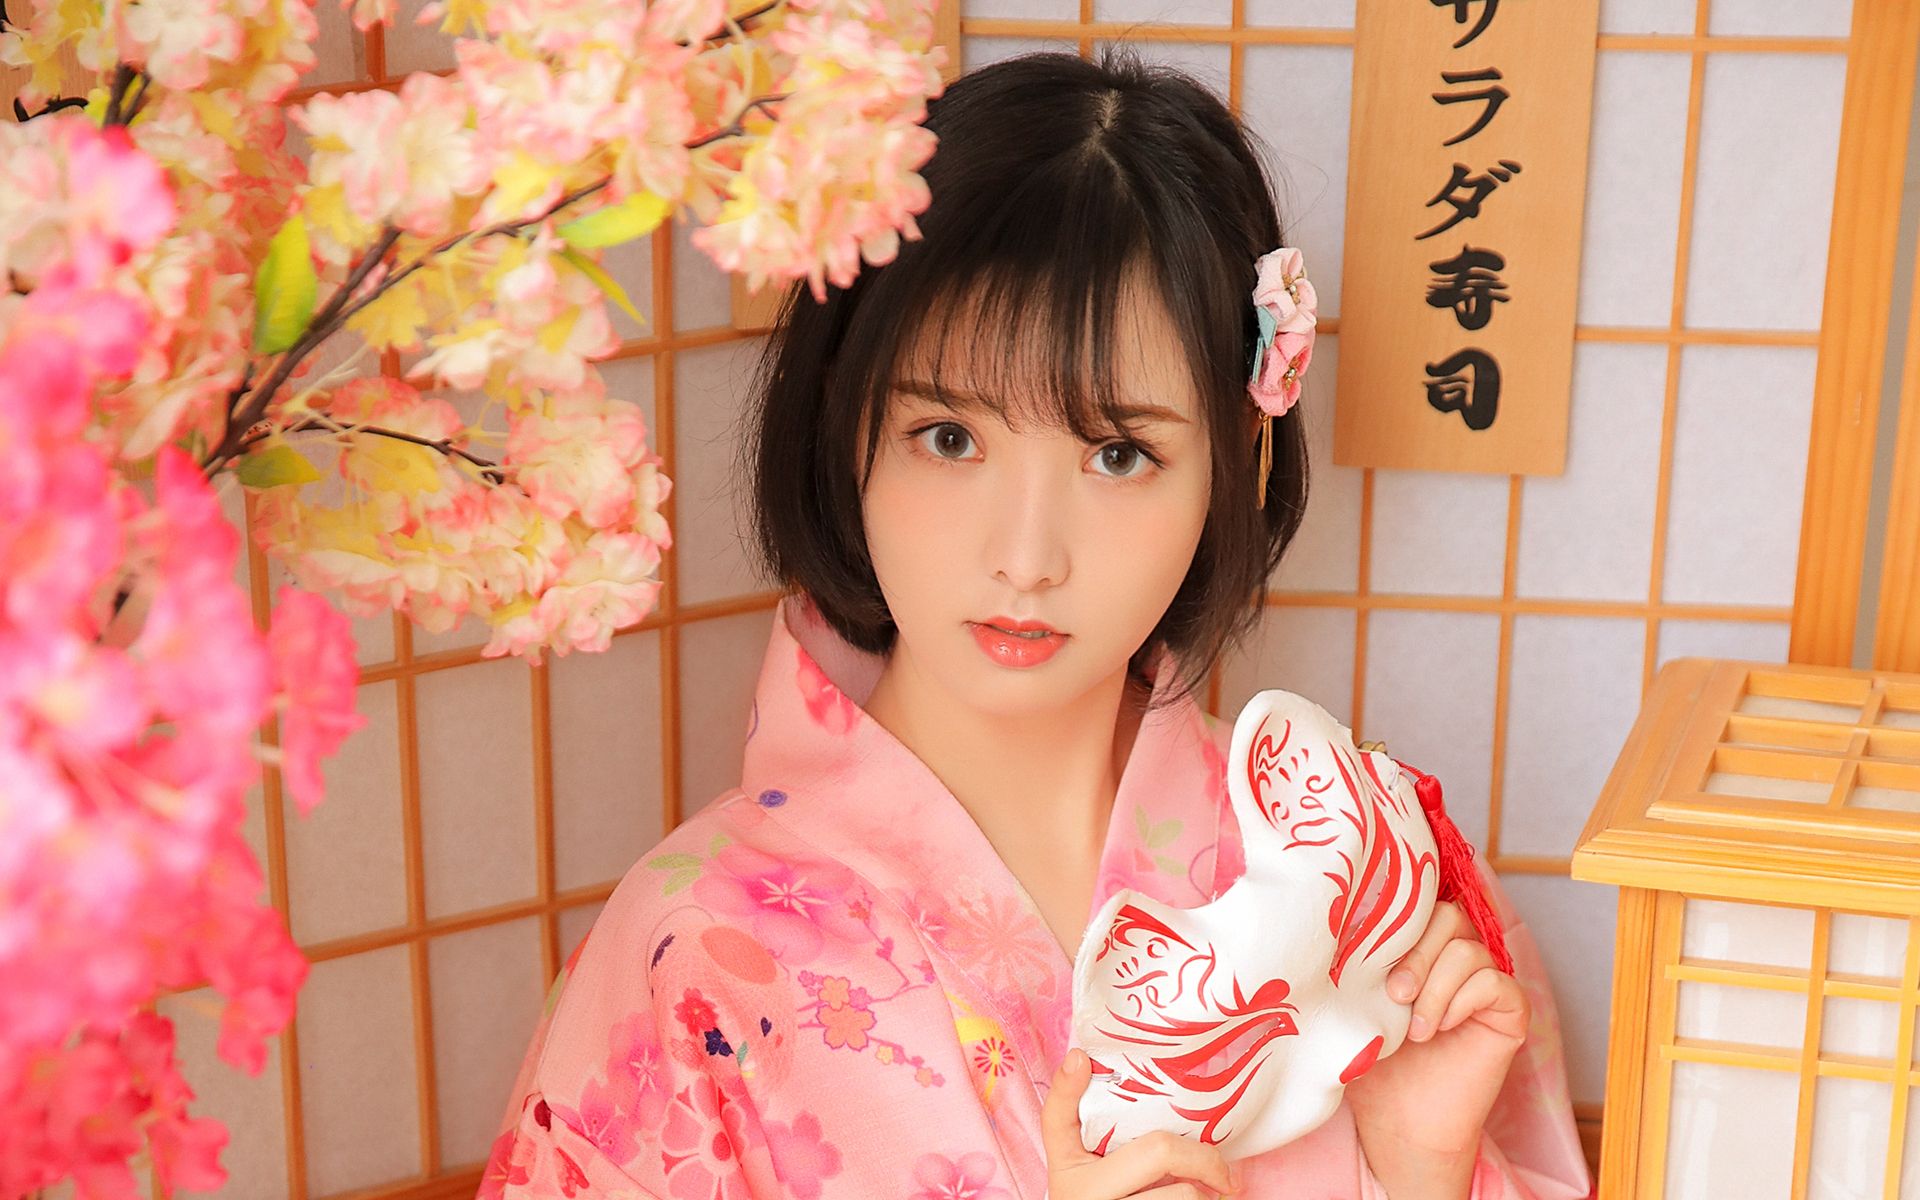 短发美女身着粉色樱花和服日系风格系列高清壁纸